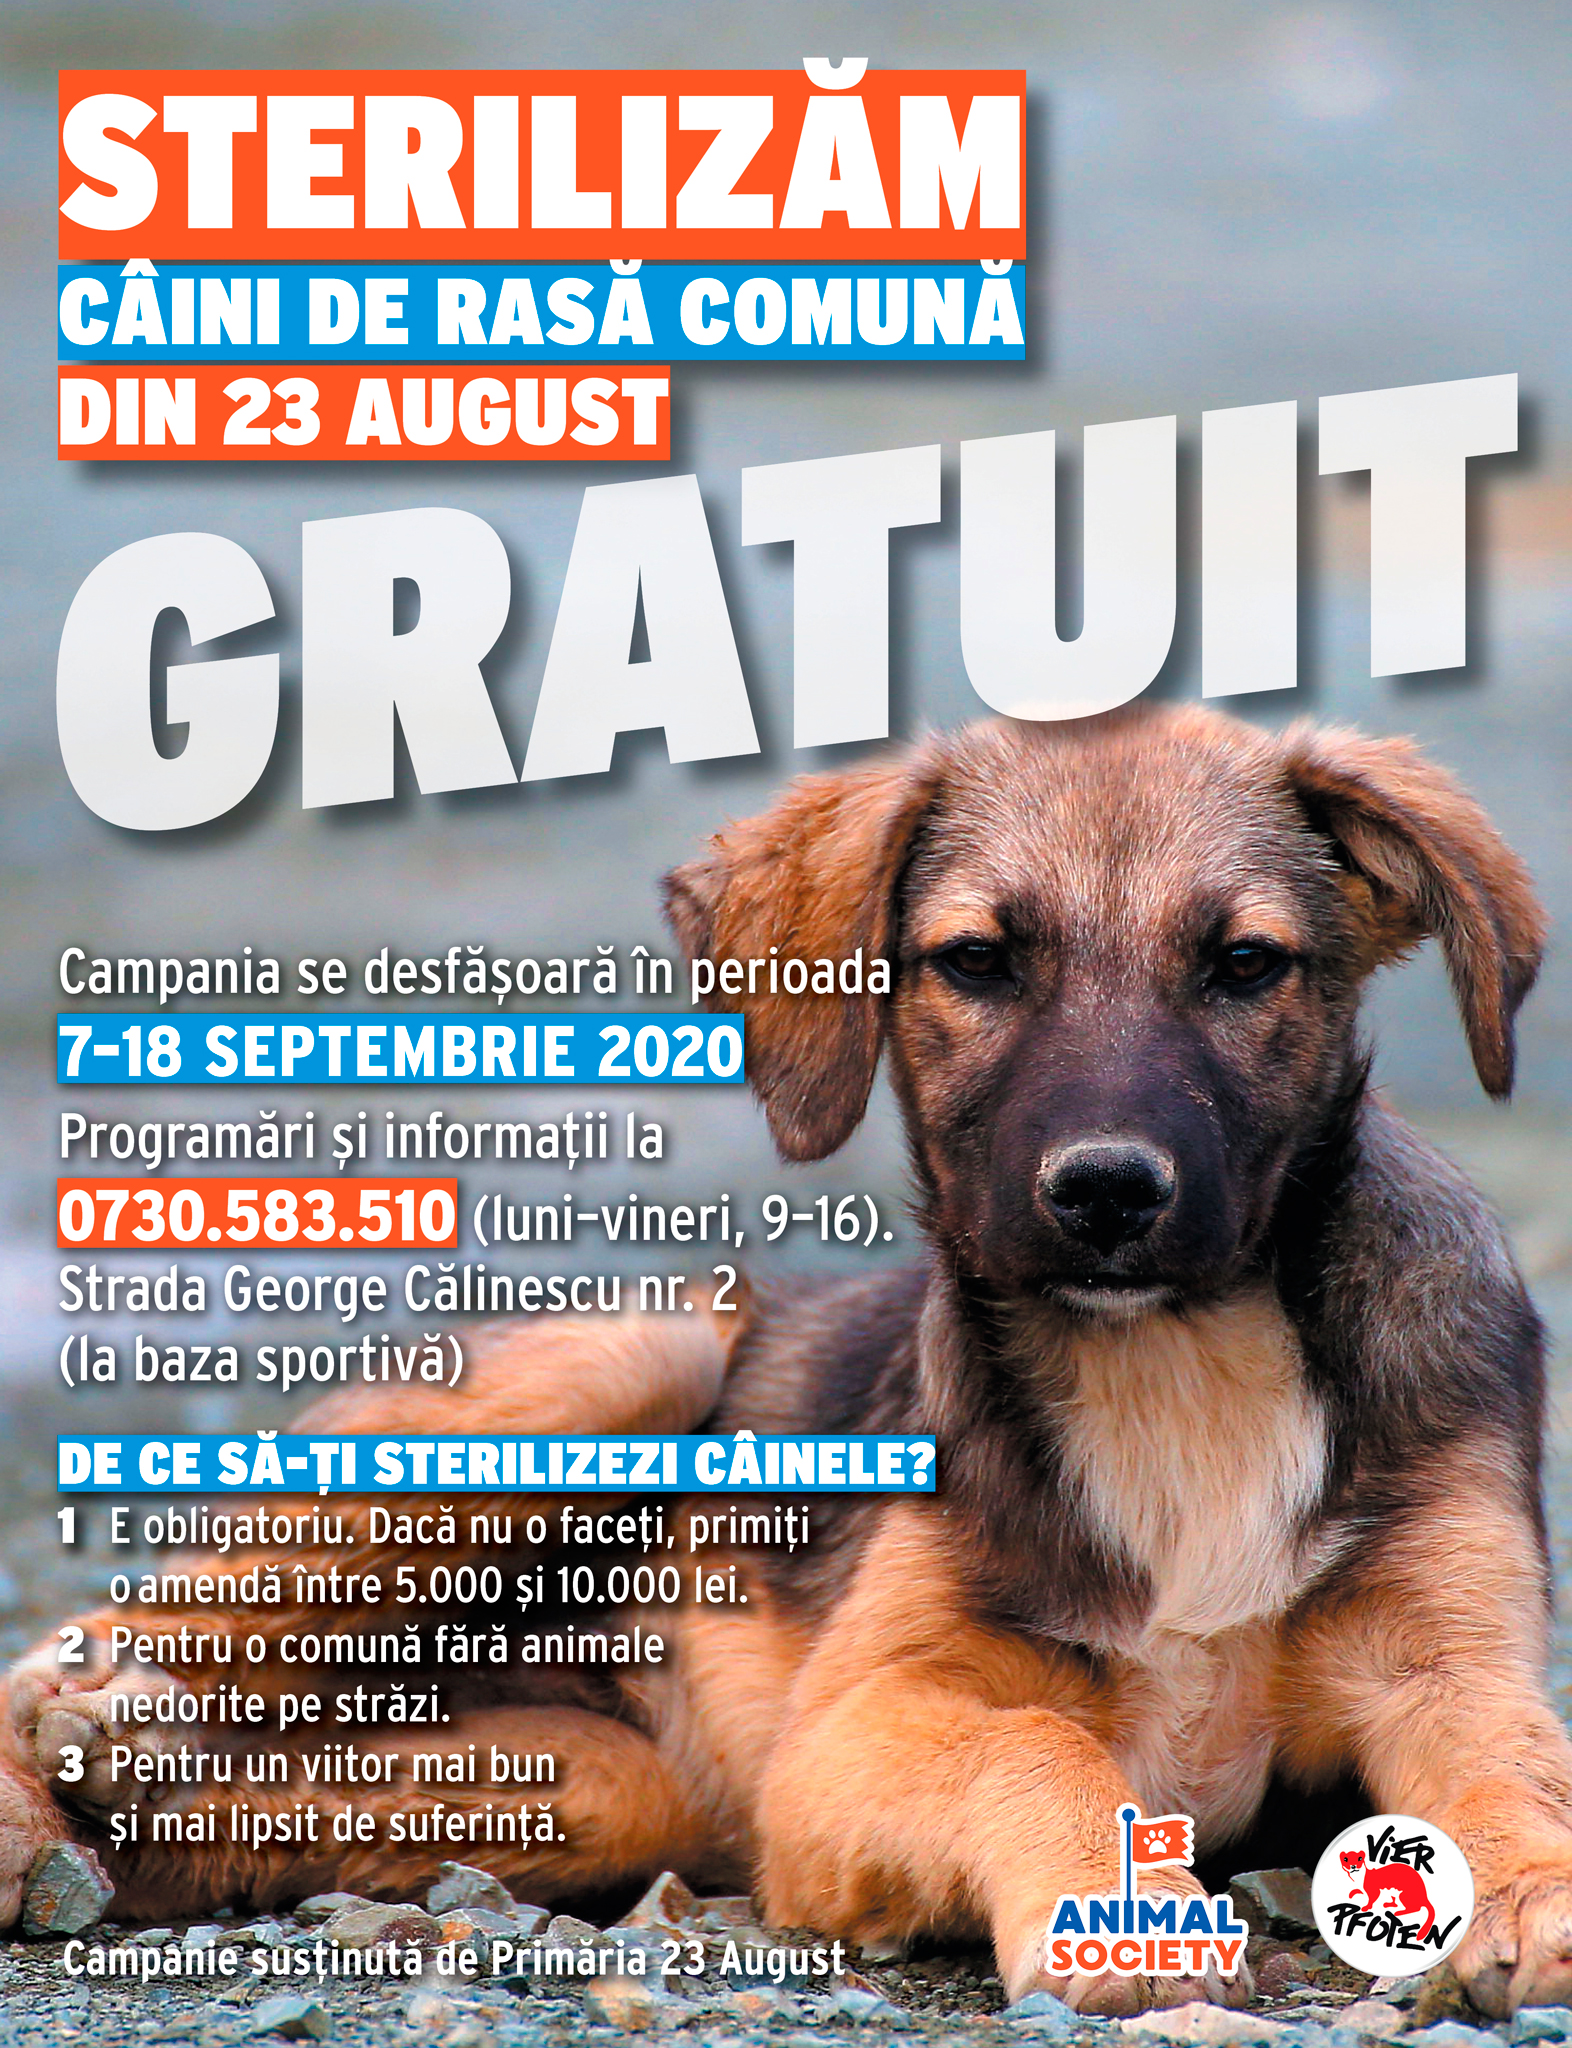 Animal Society demarează o campanie de sterilizare gratuită a câinilor din comuna 23 August